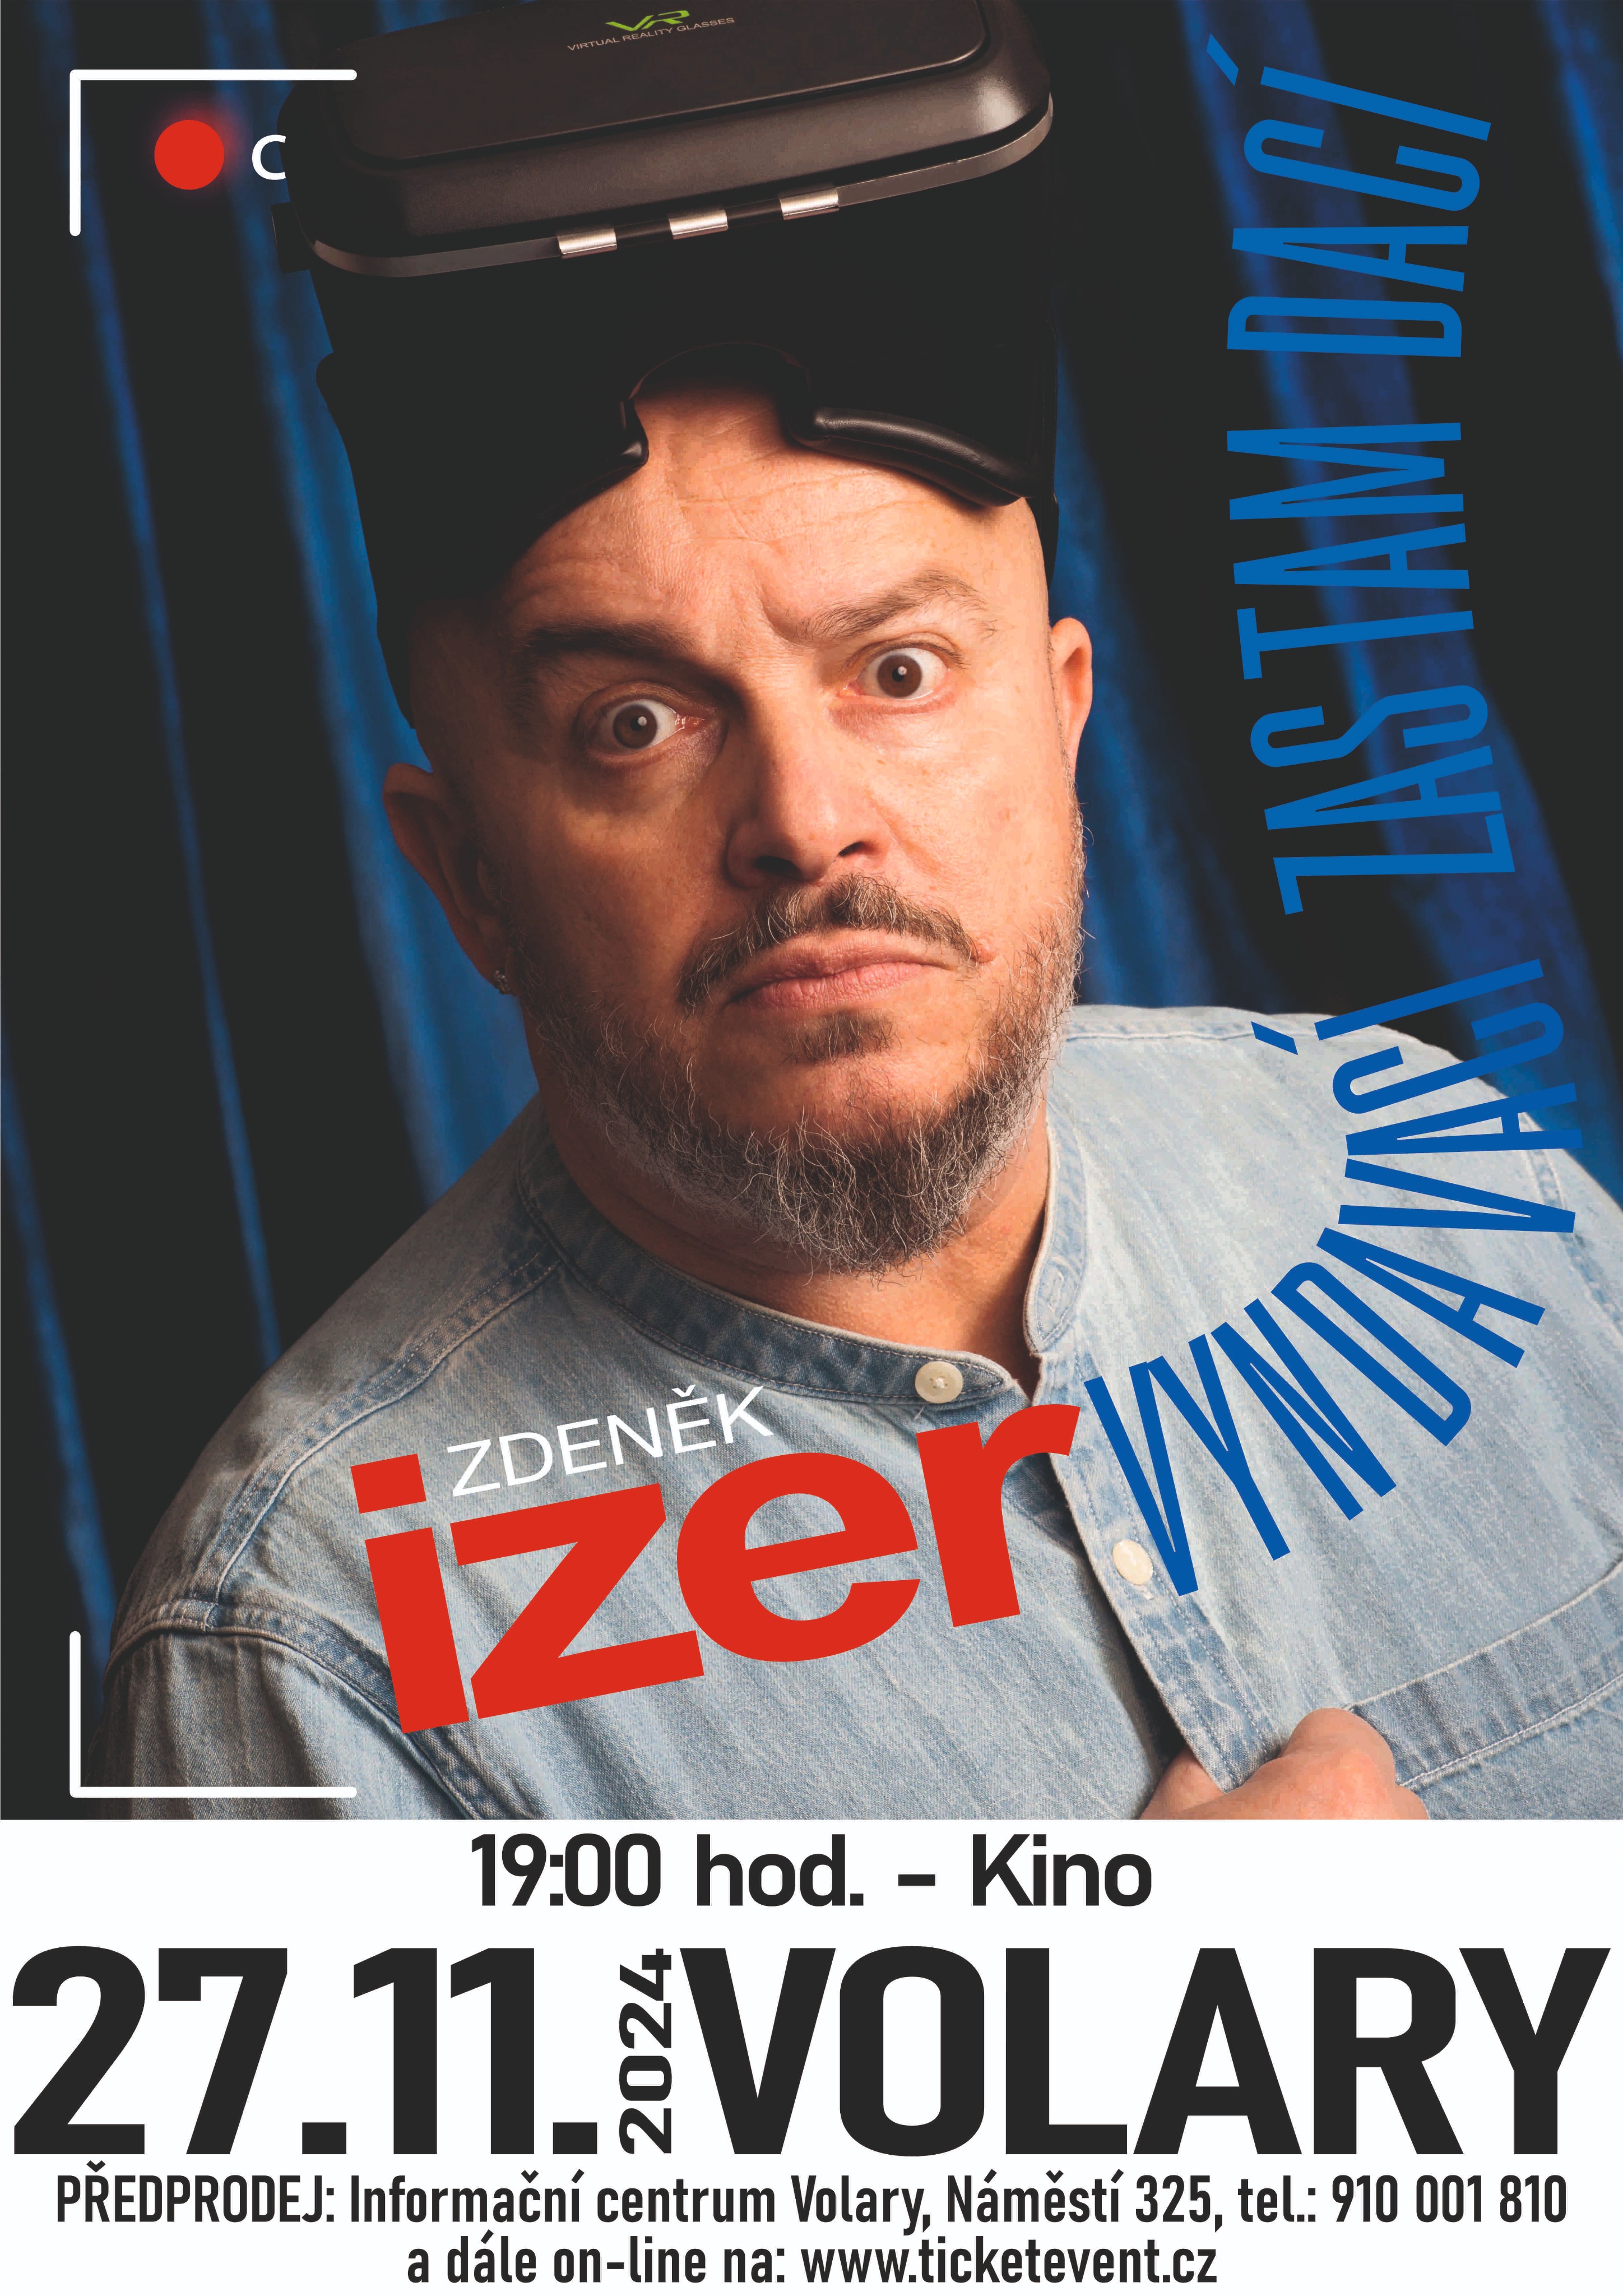 Vyndavací zas tam dací - Zdeněk Izer